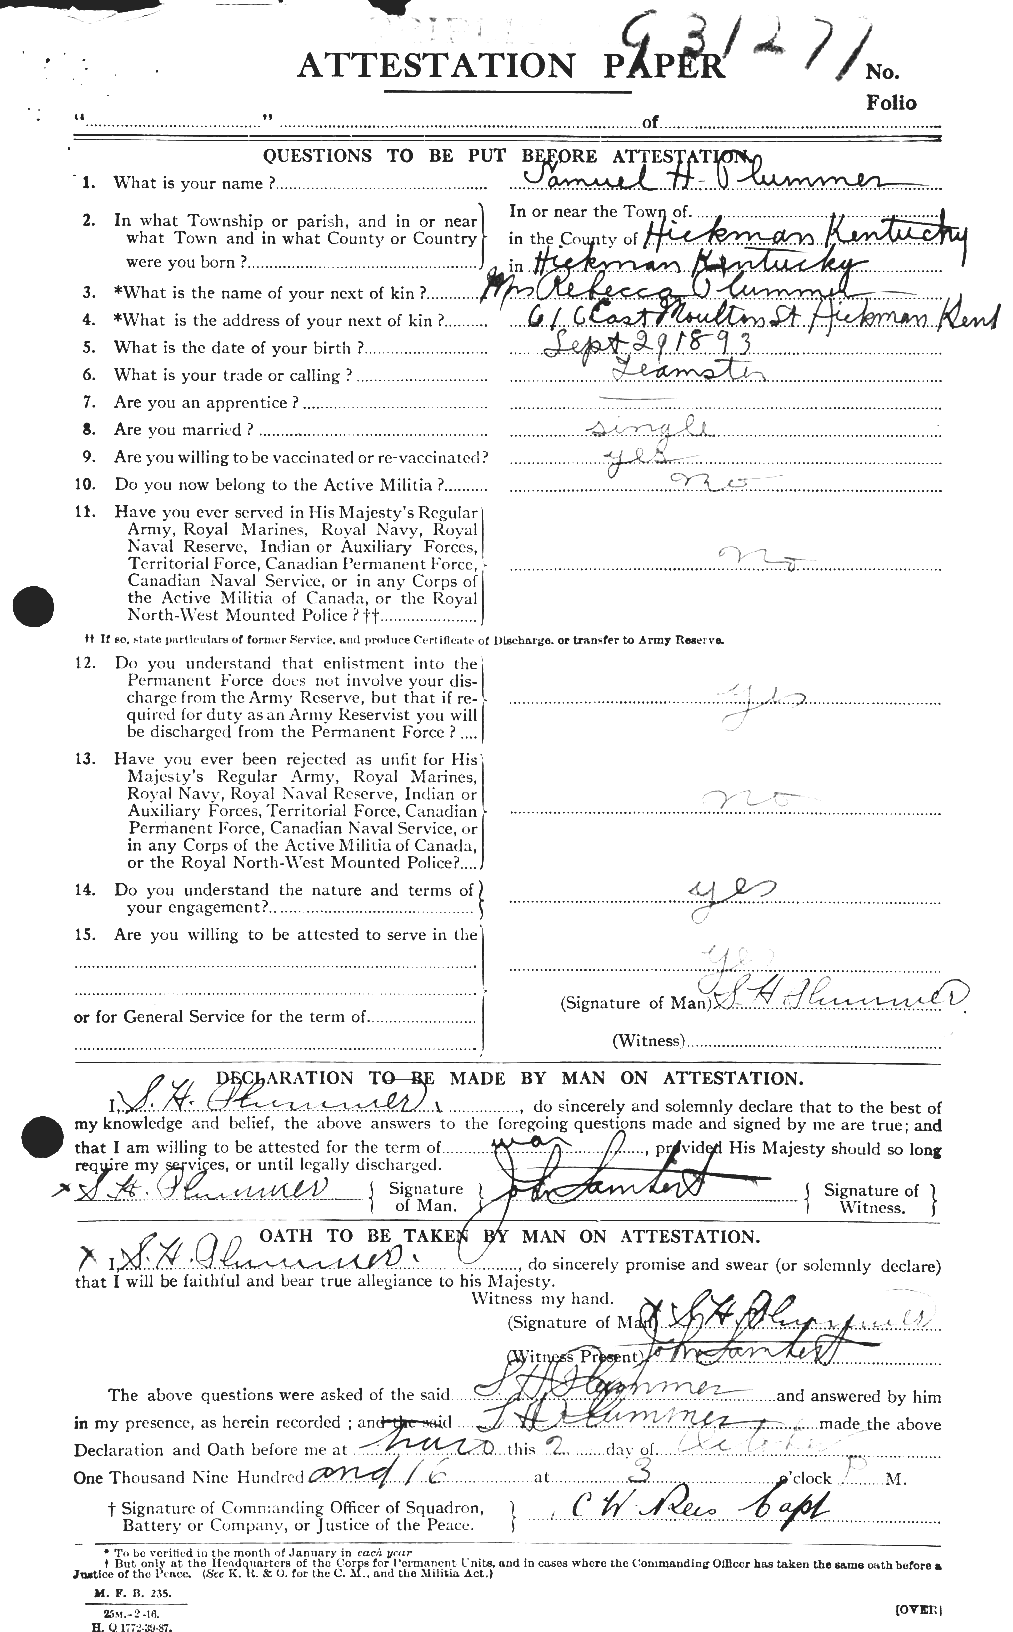 Dossiers du Personnel de la Première Guerre mondiale - CEC 578547a